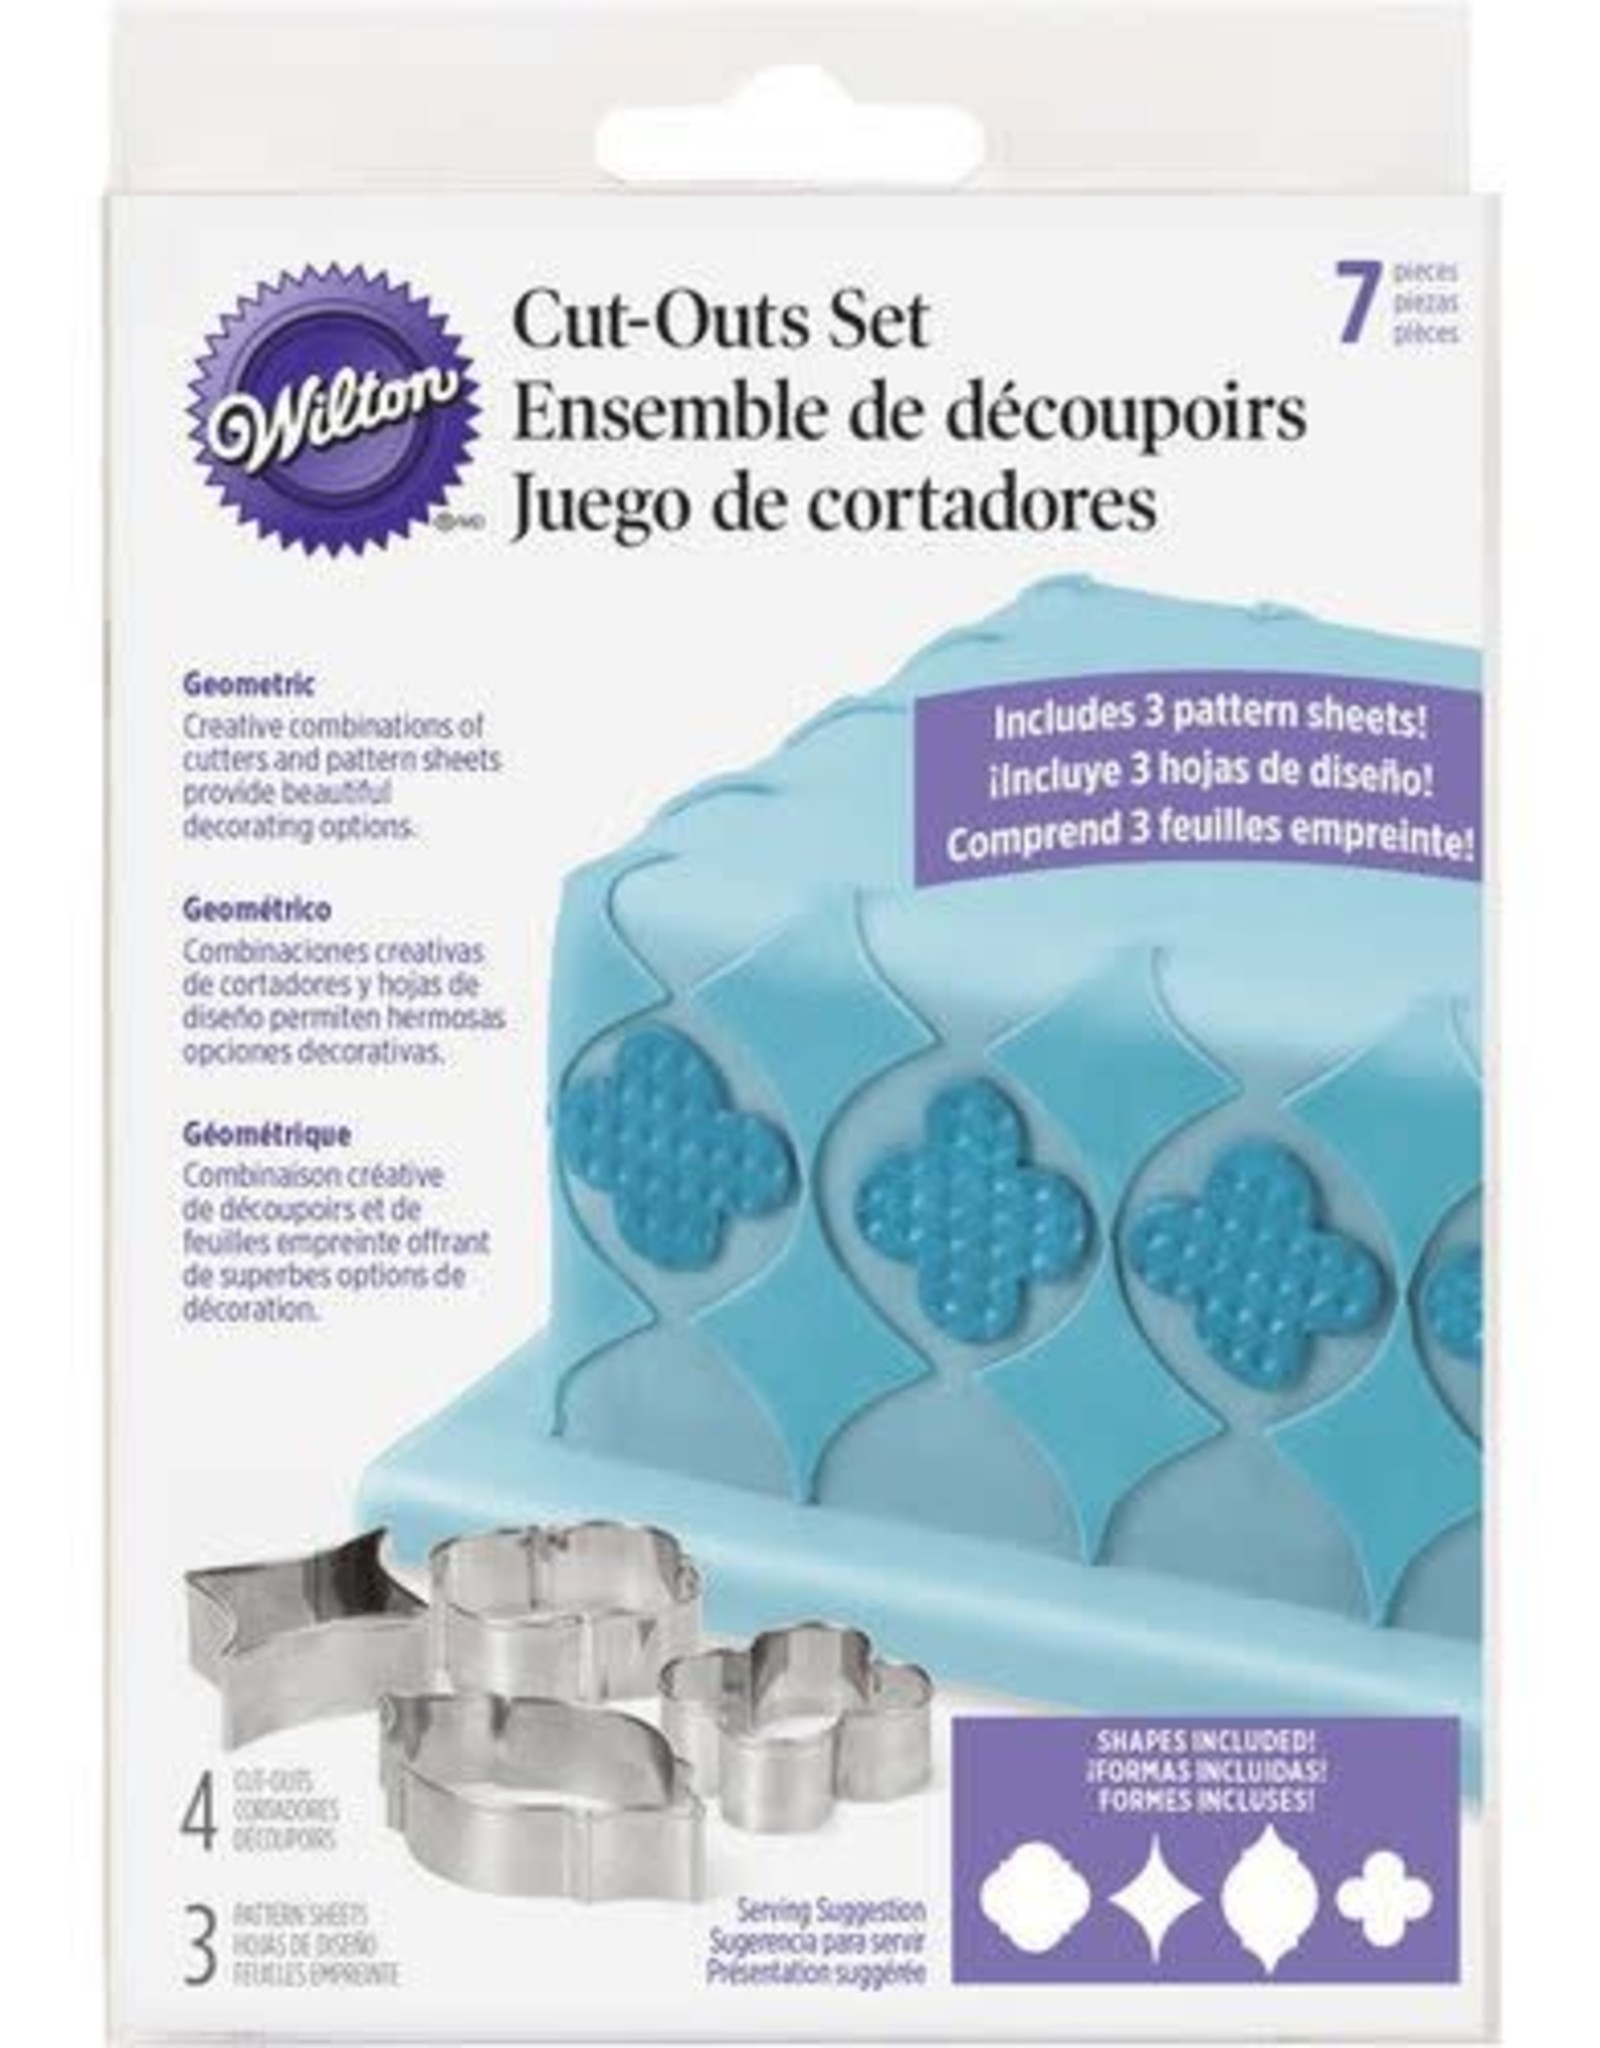 Cut-Outs Set (Geometric)